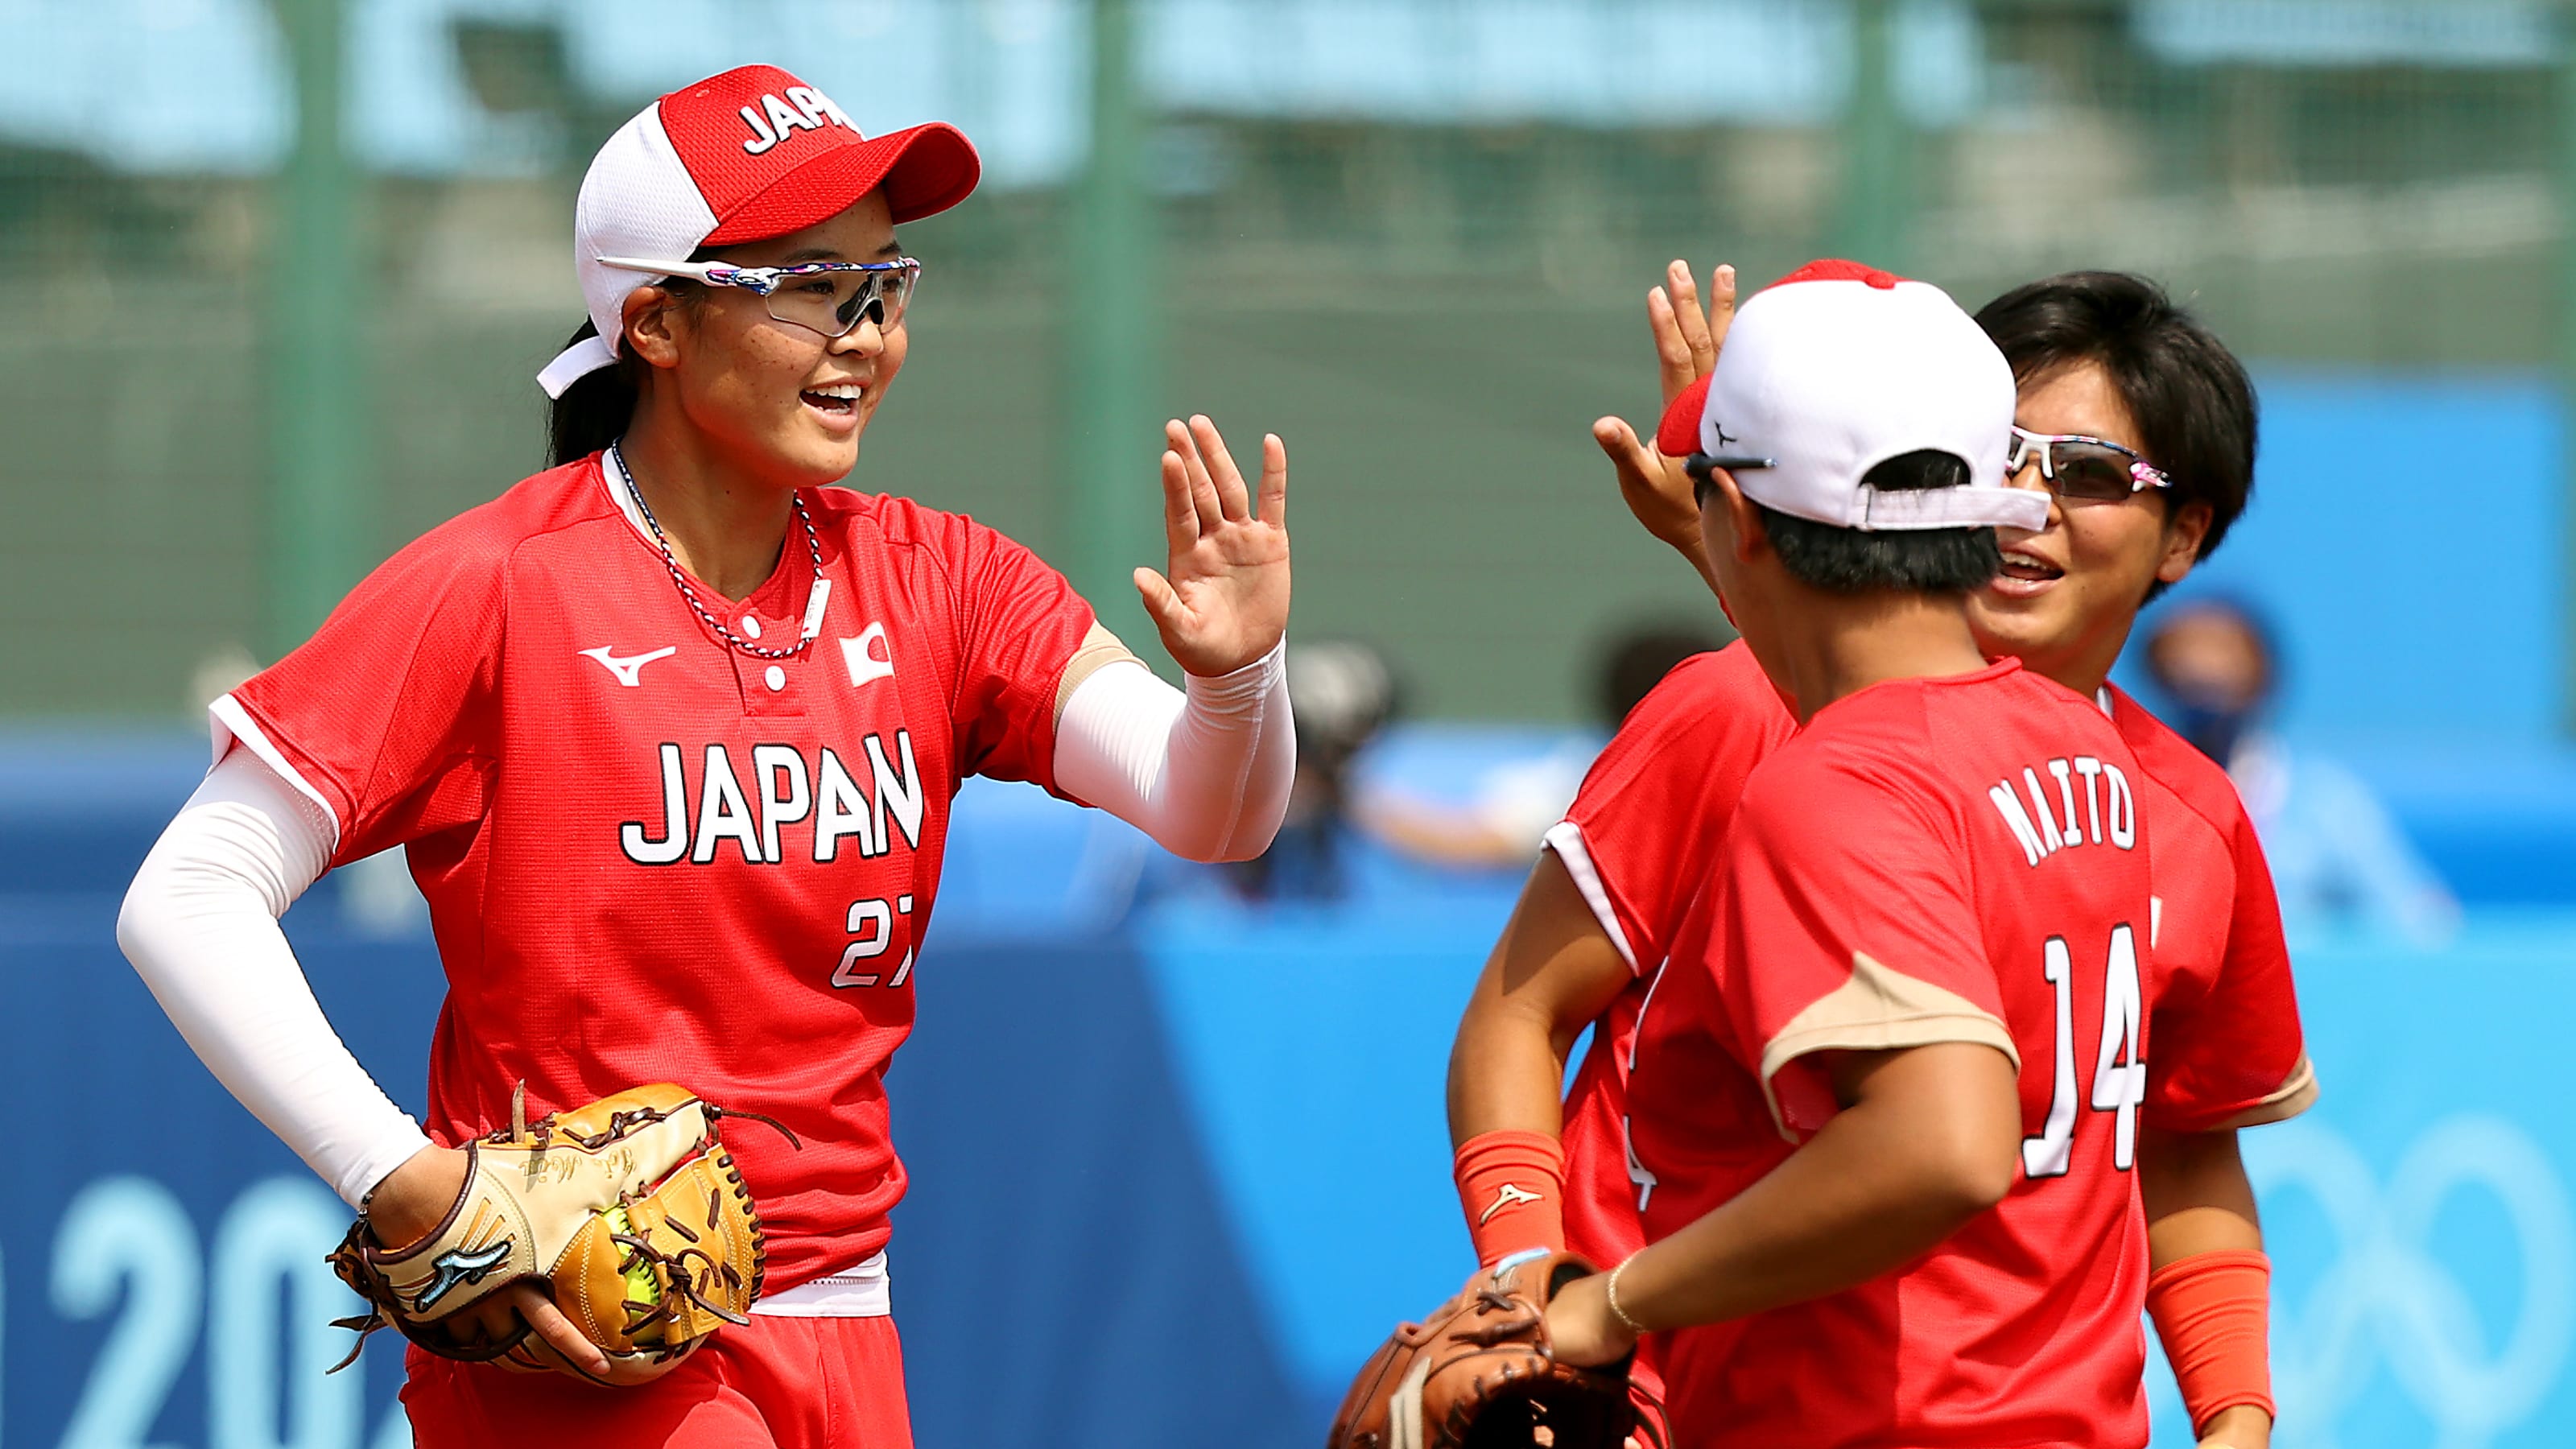 7月25日 東京五輪ソフトボール競技の放送予定 日本はカナダと対戦